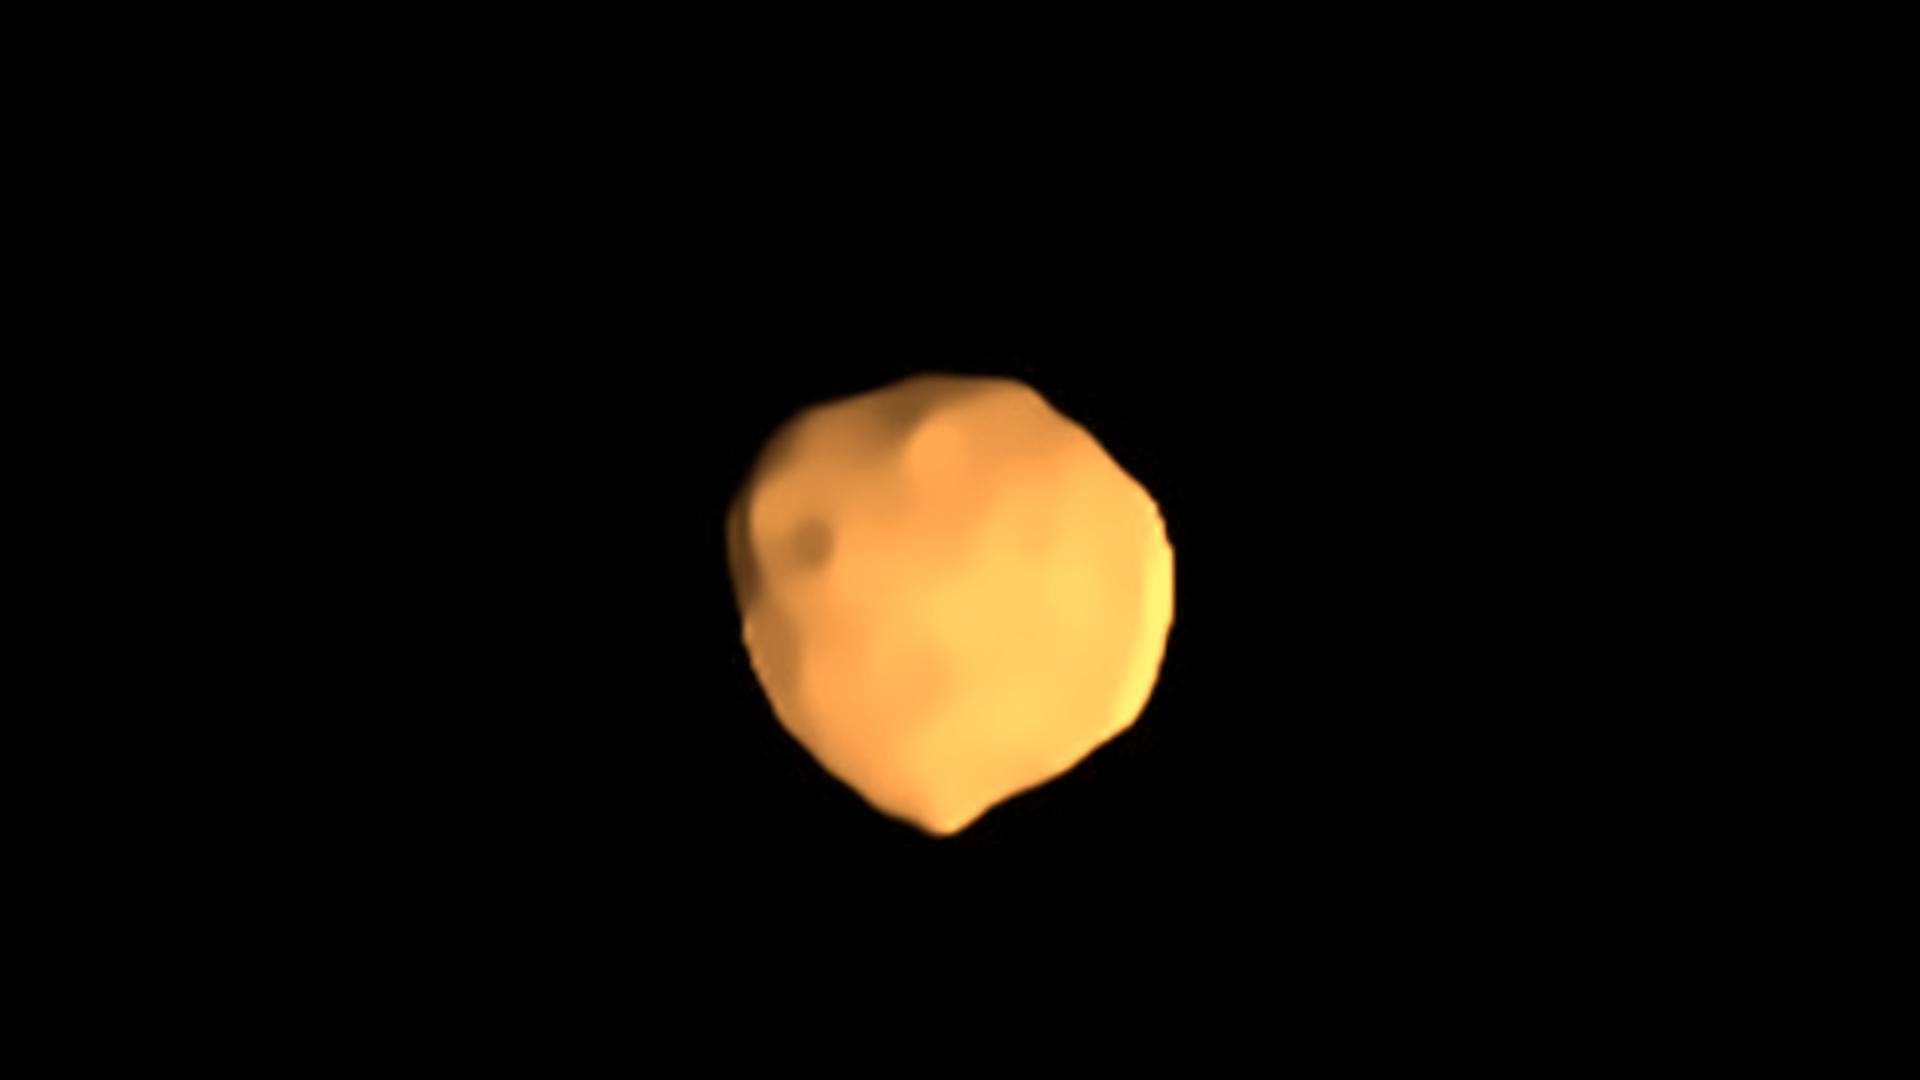 Die beste Aufnahme bisher: Der Asteroid Bamberga, fotografiert vom Very Large Telescope in Chile (Falschfarben)